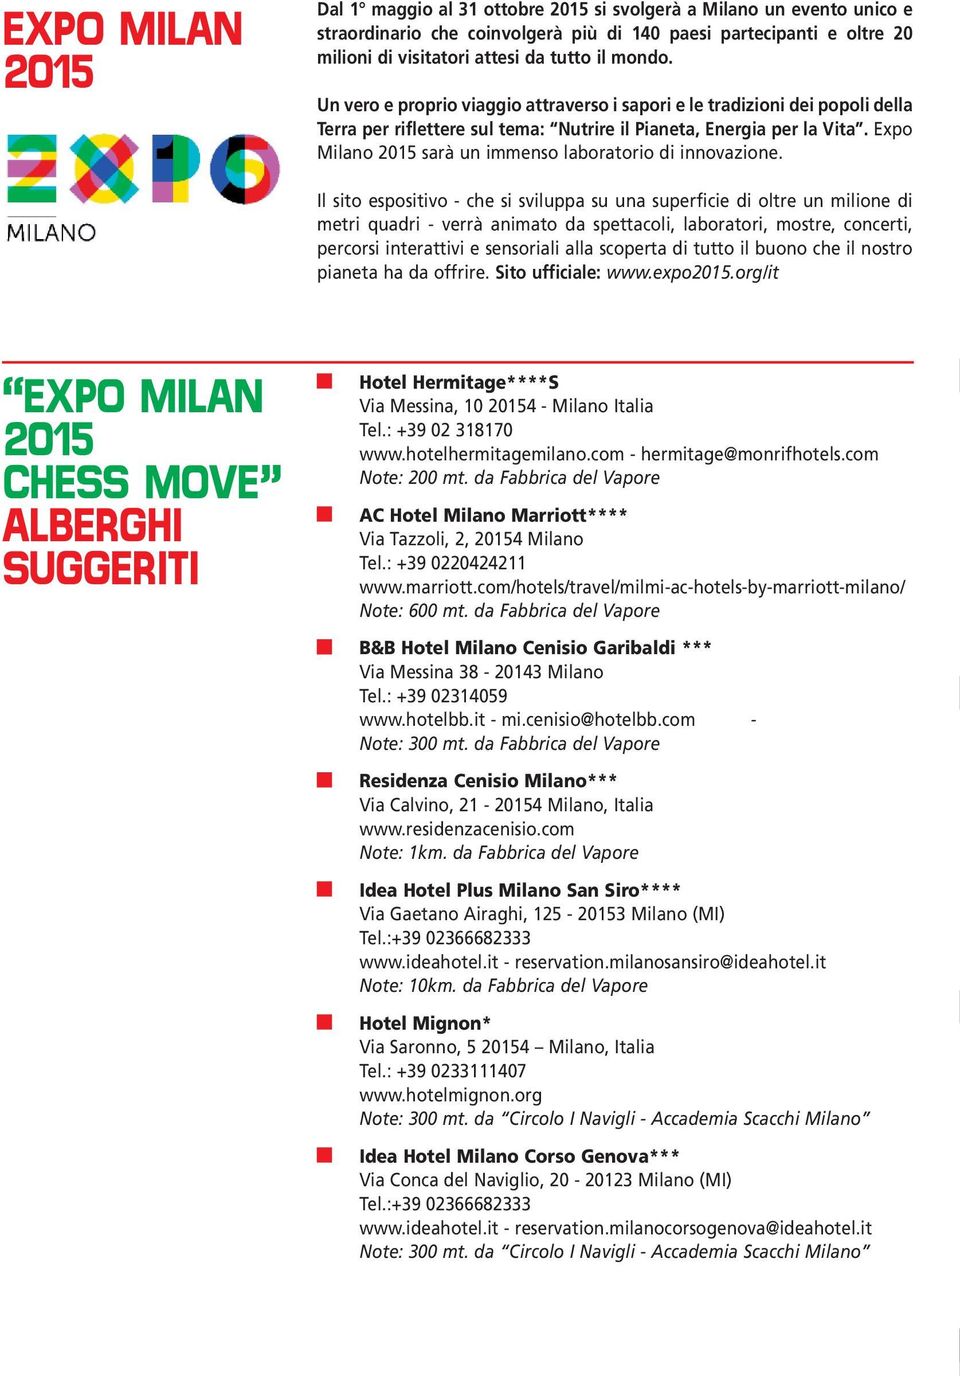 Expo Milano sarà un immenso laboratorio di innovazione.